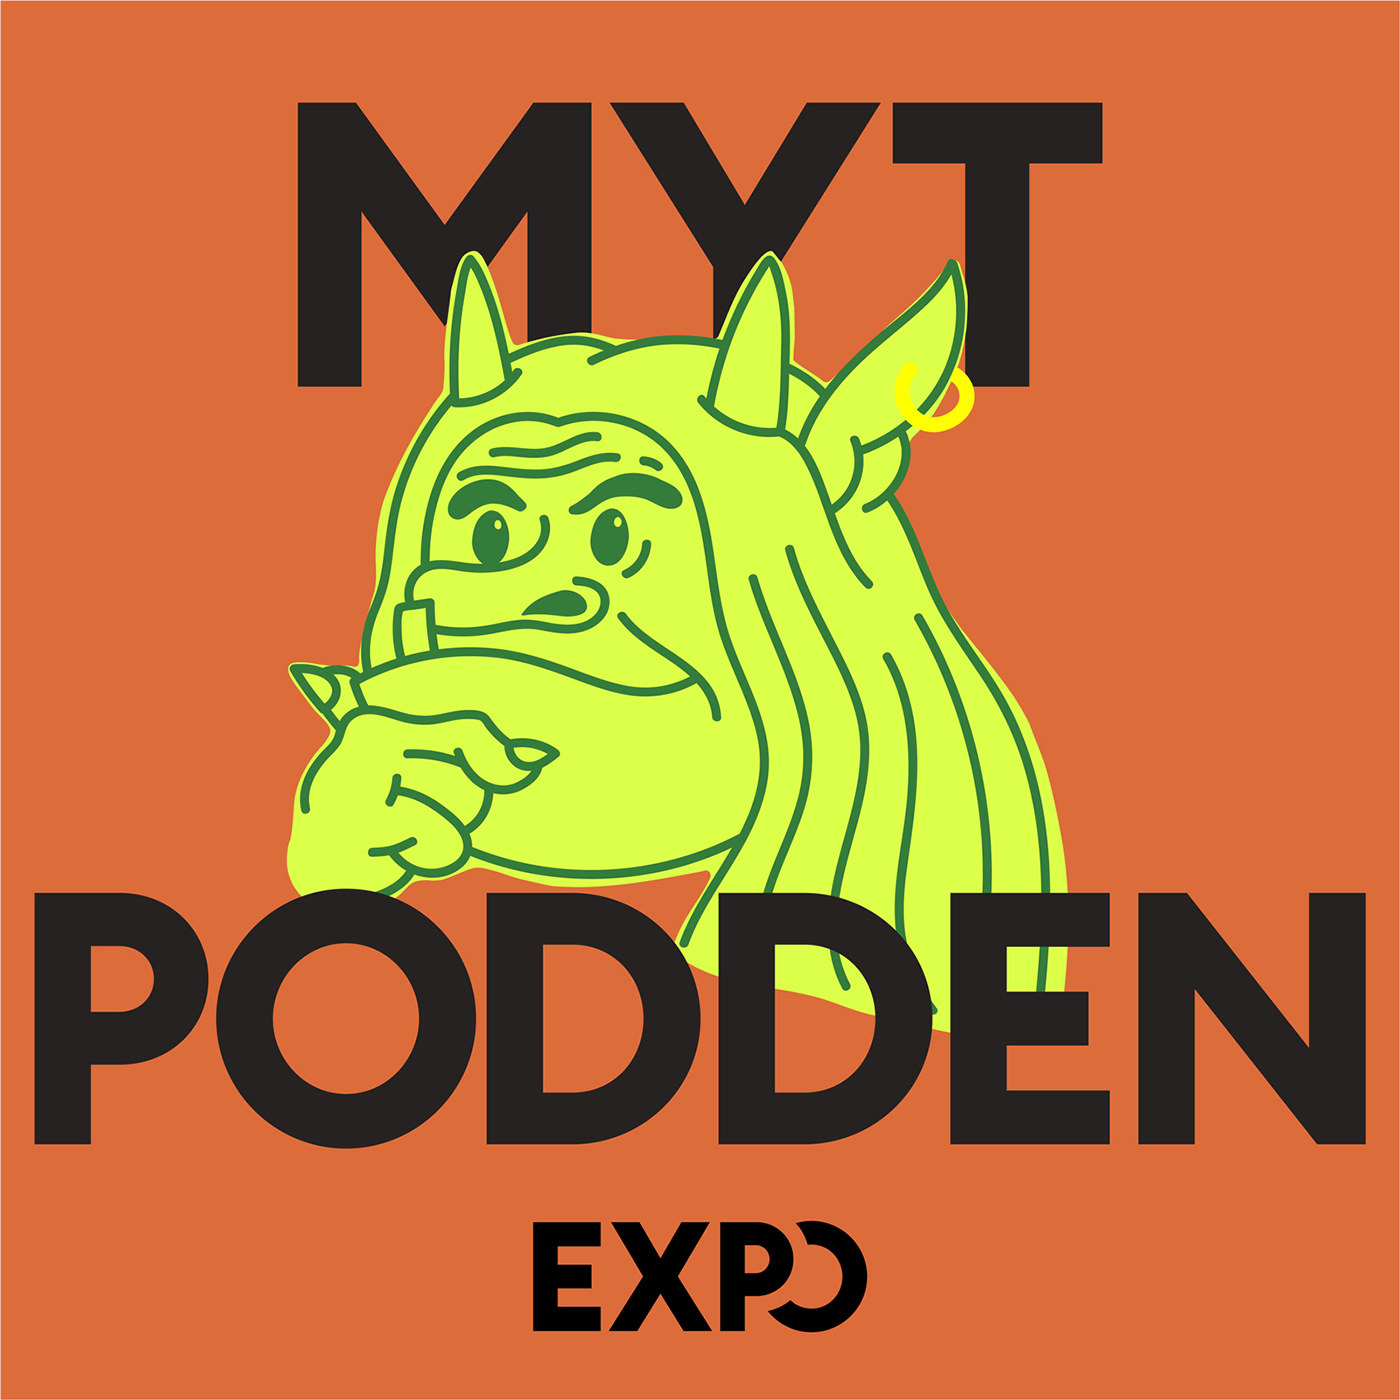 Episode 2 Mytpodden